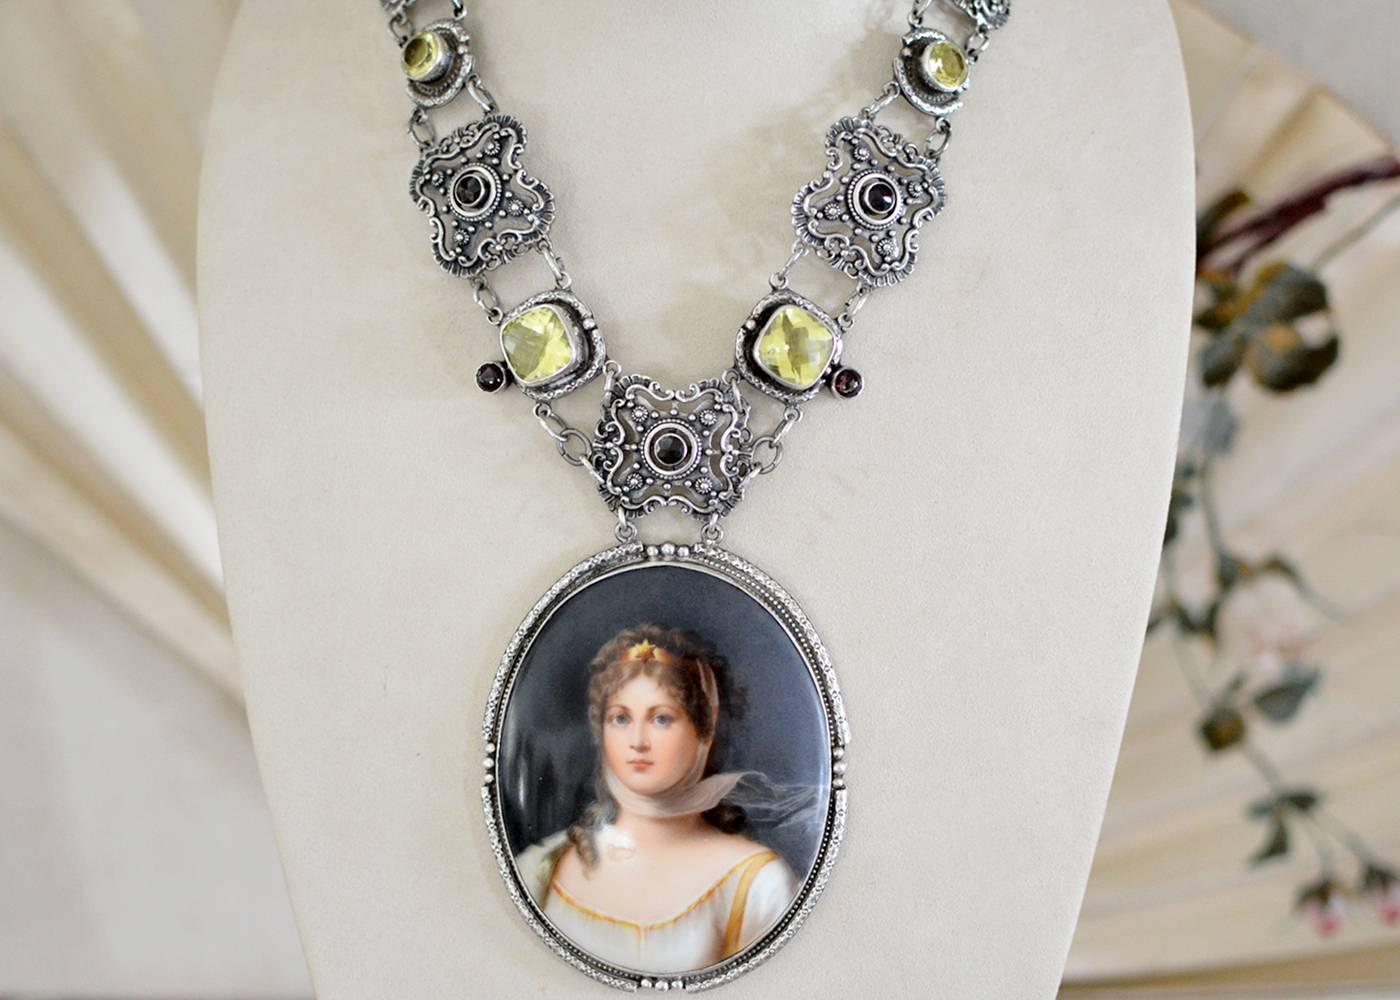 Ein wichtiges Porzellanporträt aus dem 19. Jahrhundert, das KPM zugeschrieben wird und Königin Louise von Preußen darstellt, wird zum zentralen Element dieser einzigartigen Renaissance-Halskette. Aufwändige, kragenartige Verkettungen aus exquisit